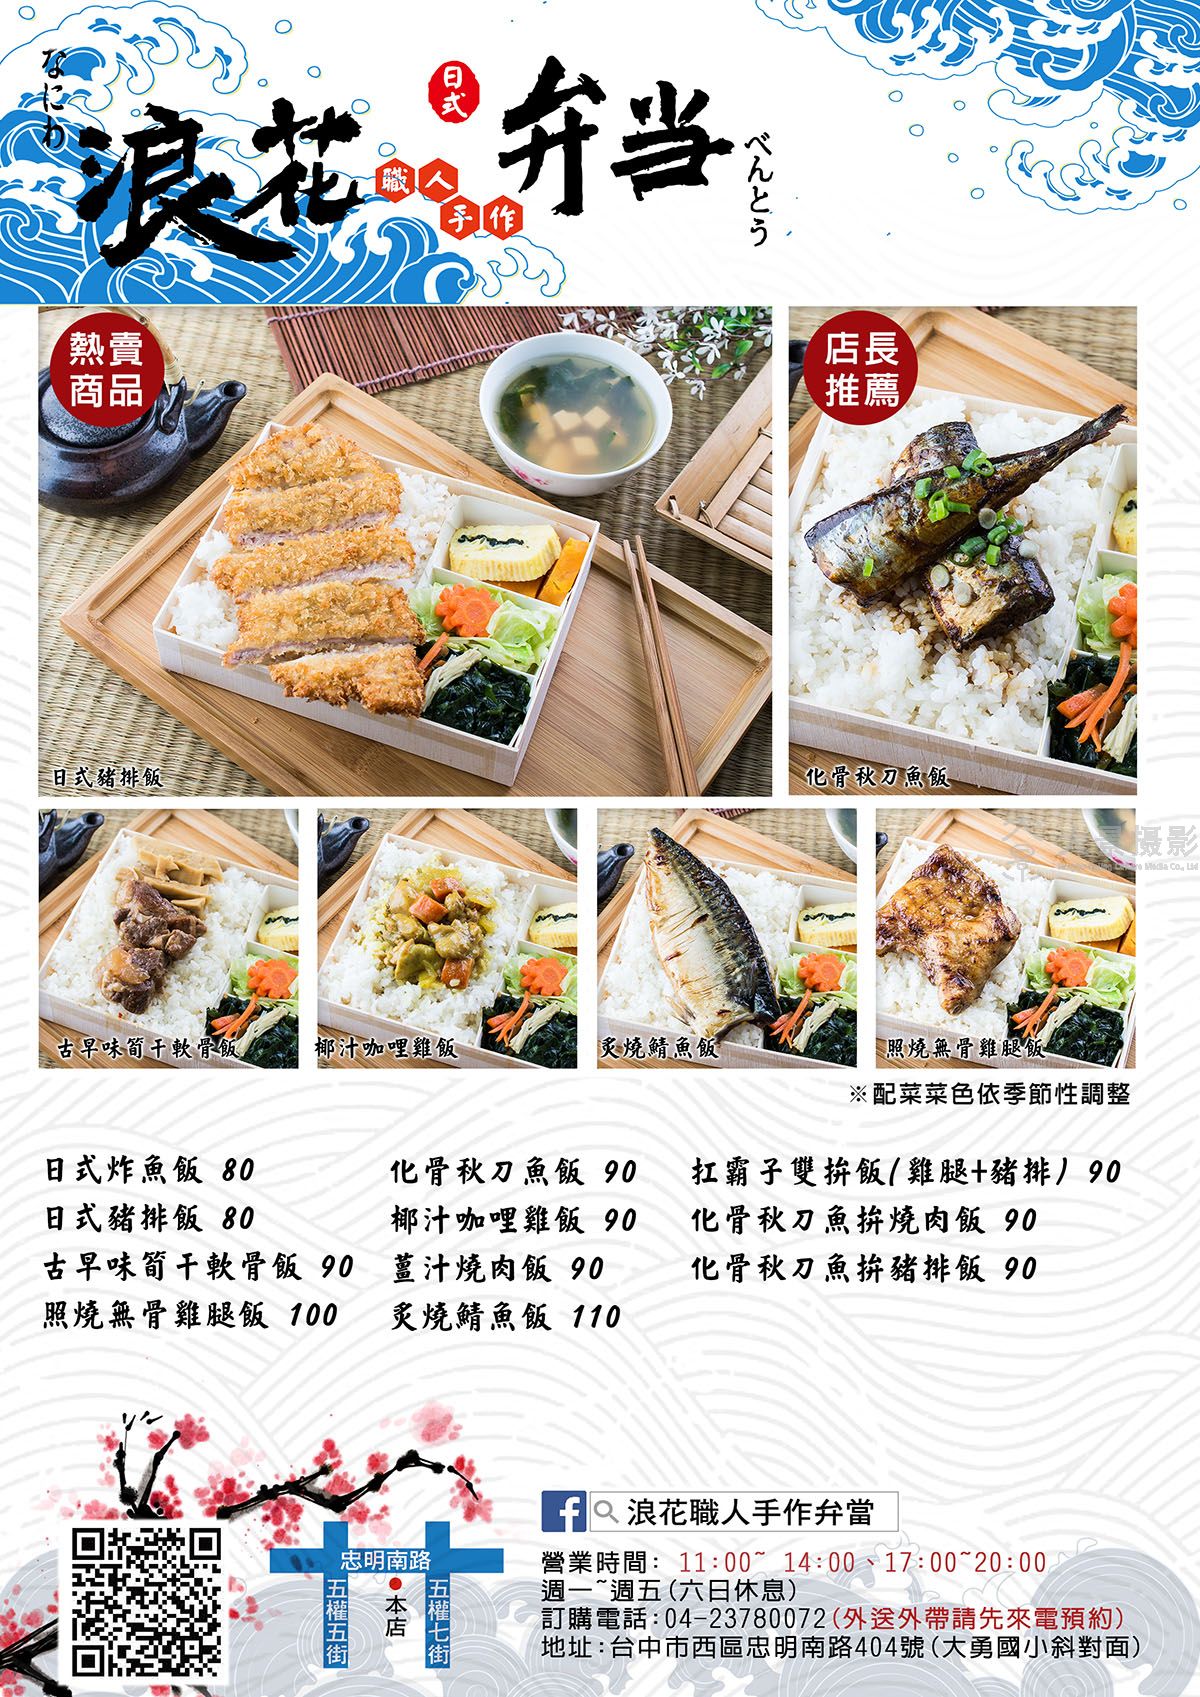 上海菜单设计多少钱